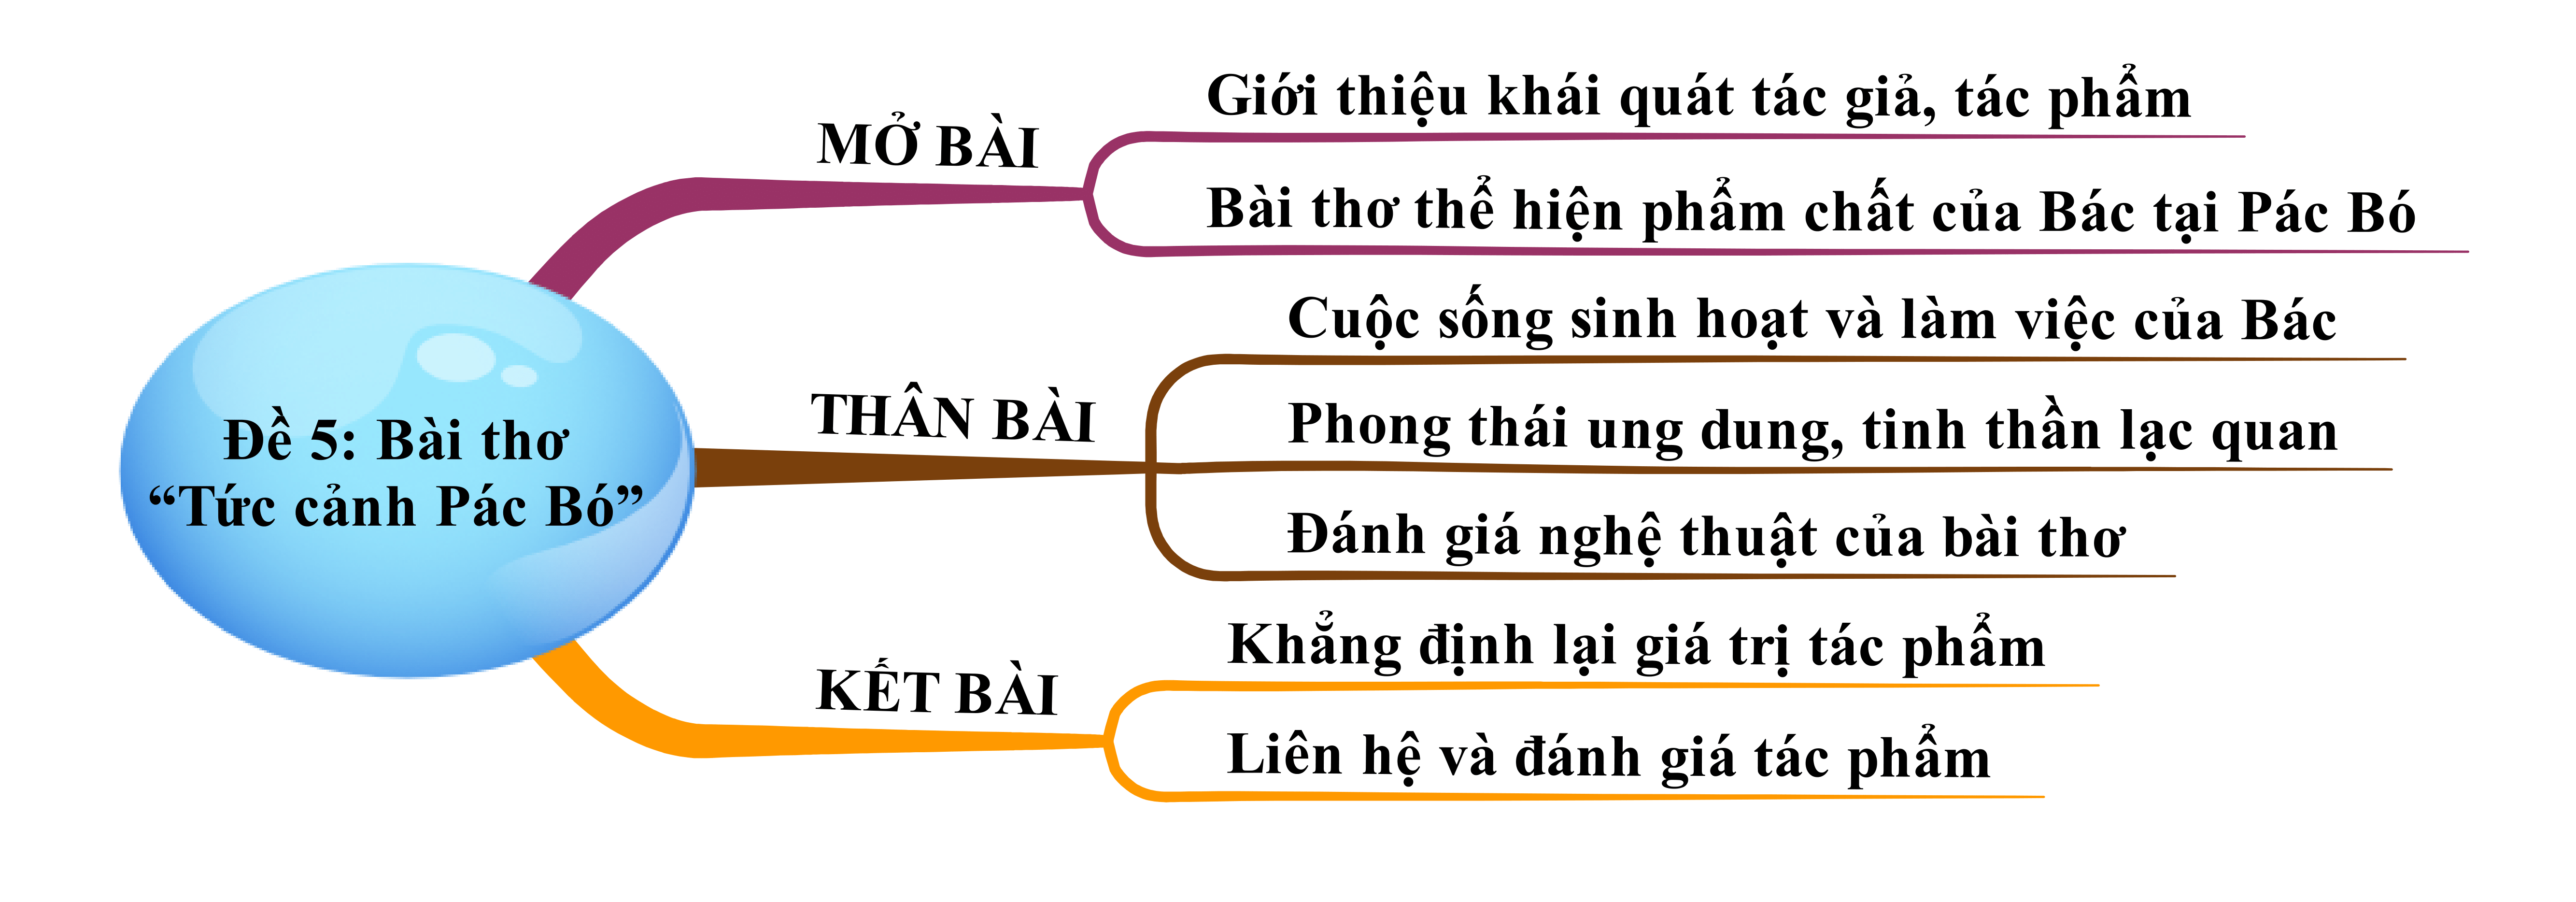 Bài thơ Tức cảnh Pác Bó của Hồ Chí Minh hay nhất ( 4 mẫu) (ảnh 3)